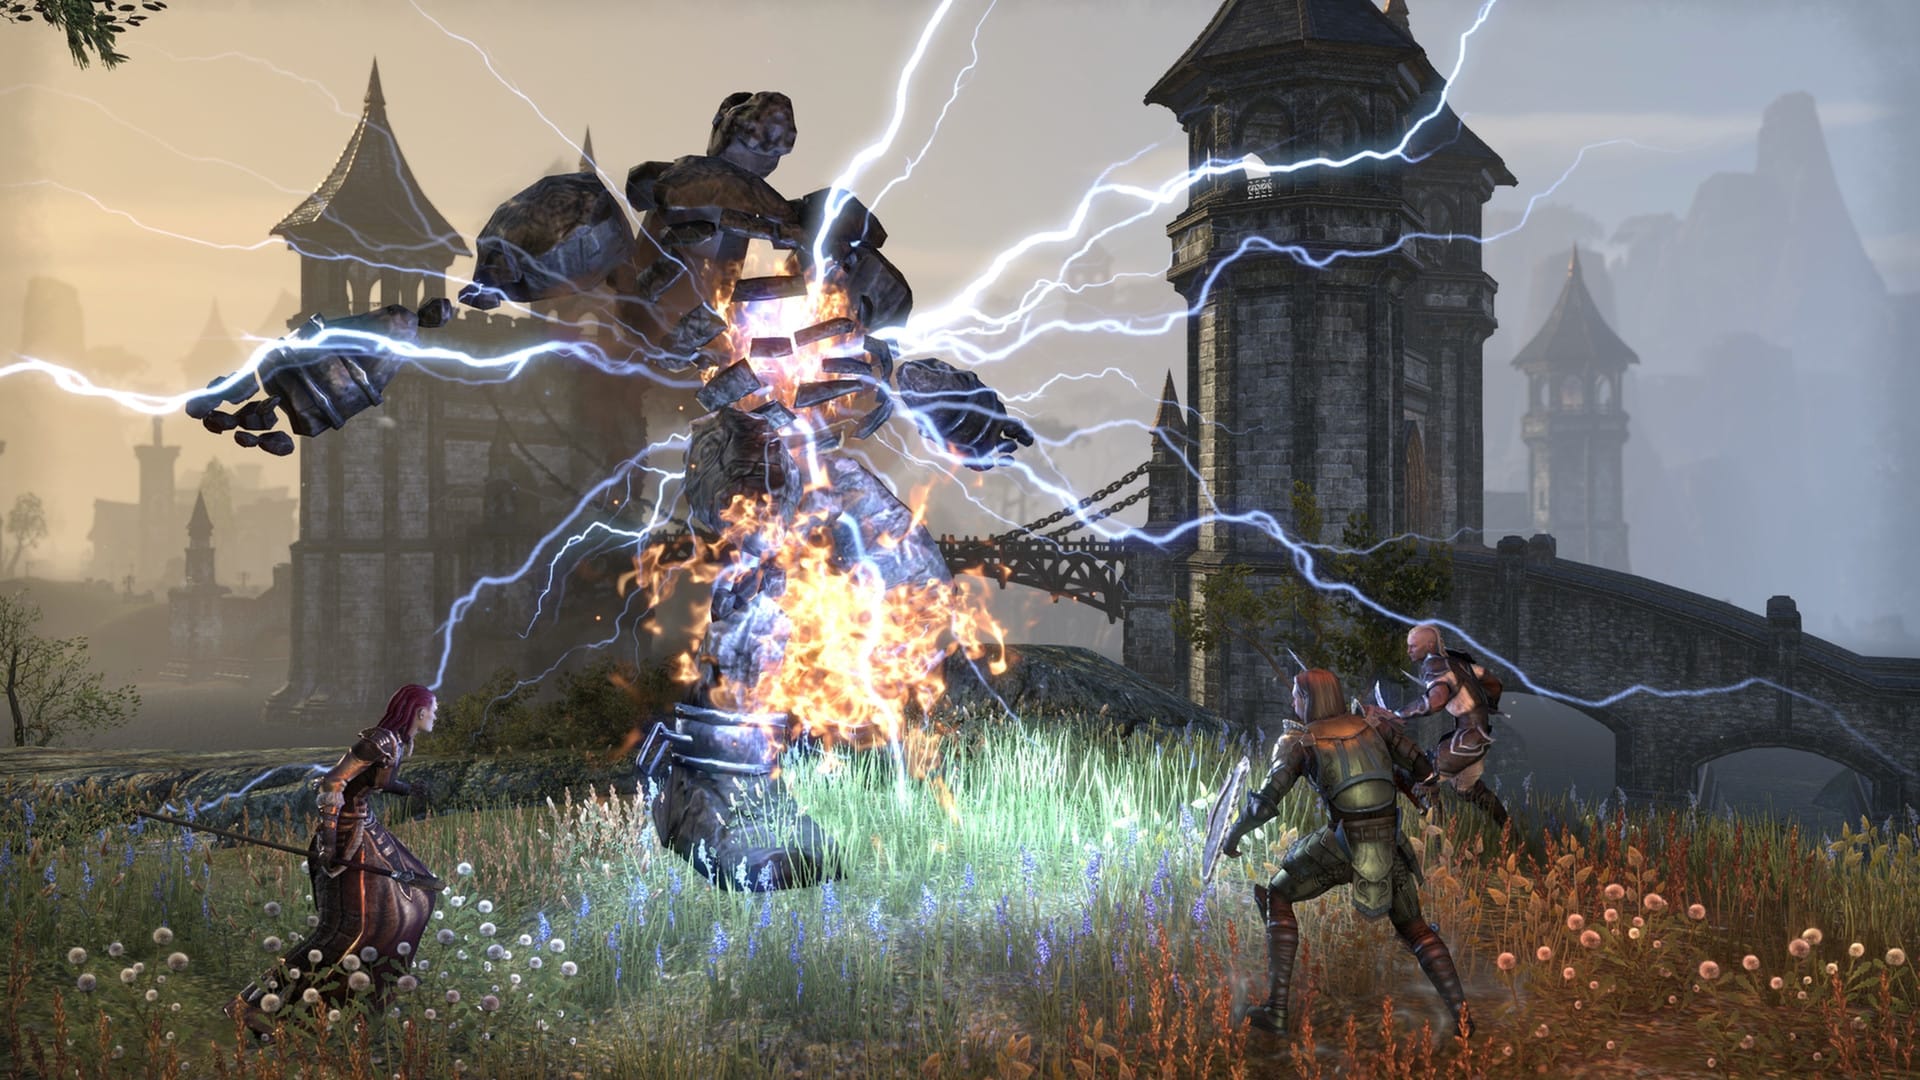 Najlepsze gry MMORPG: The Elder Scrolls Online. Obraz pokazuje imprezę trzech postaci zbliżających się do dużego kamiennego stworzenia z wychodzącą z niego energią elektryczną